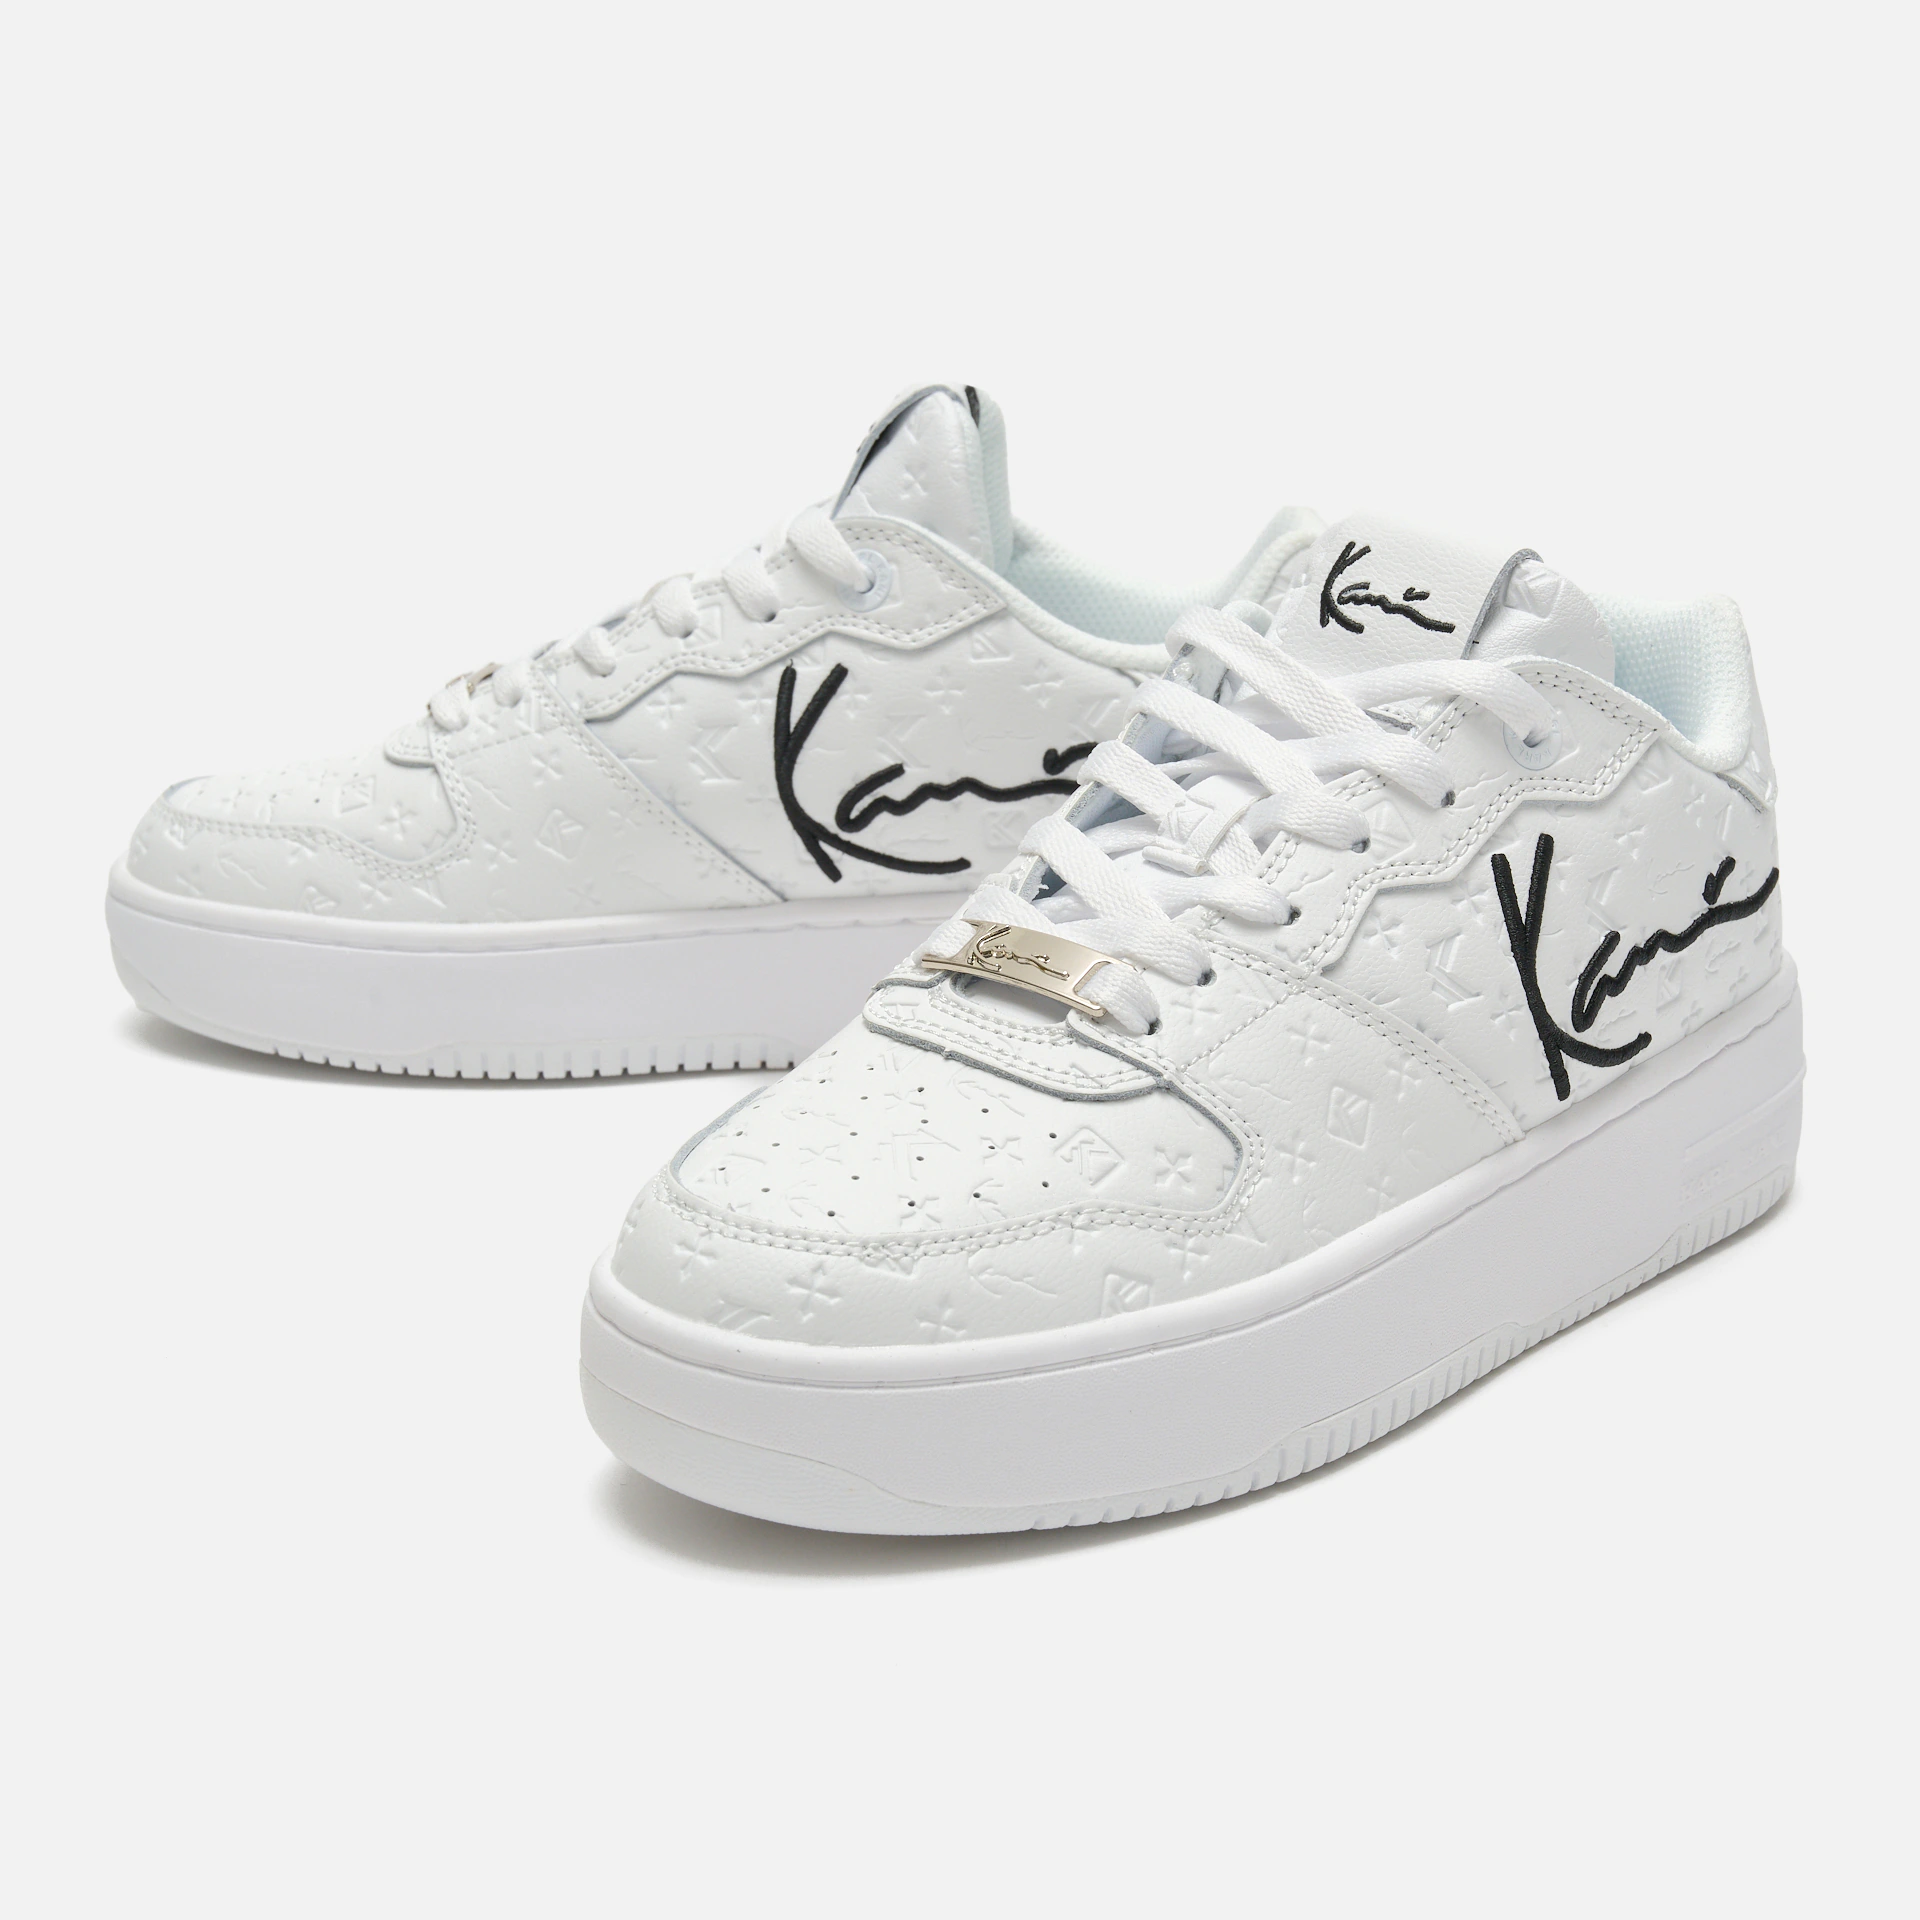 Karl Kani 89 Up Logo Premium Sneakers White/Black